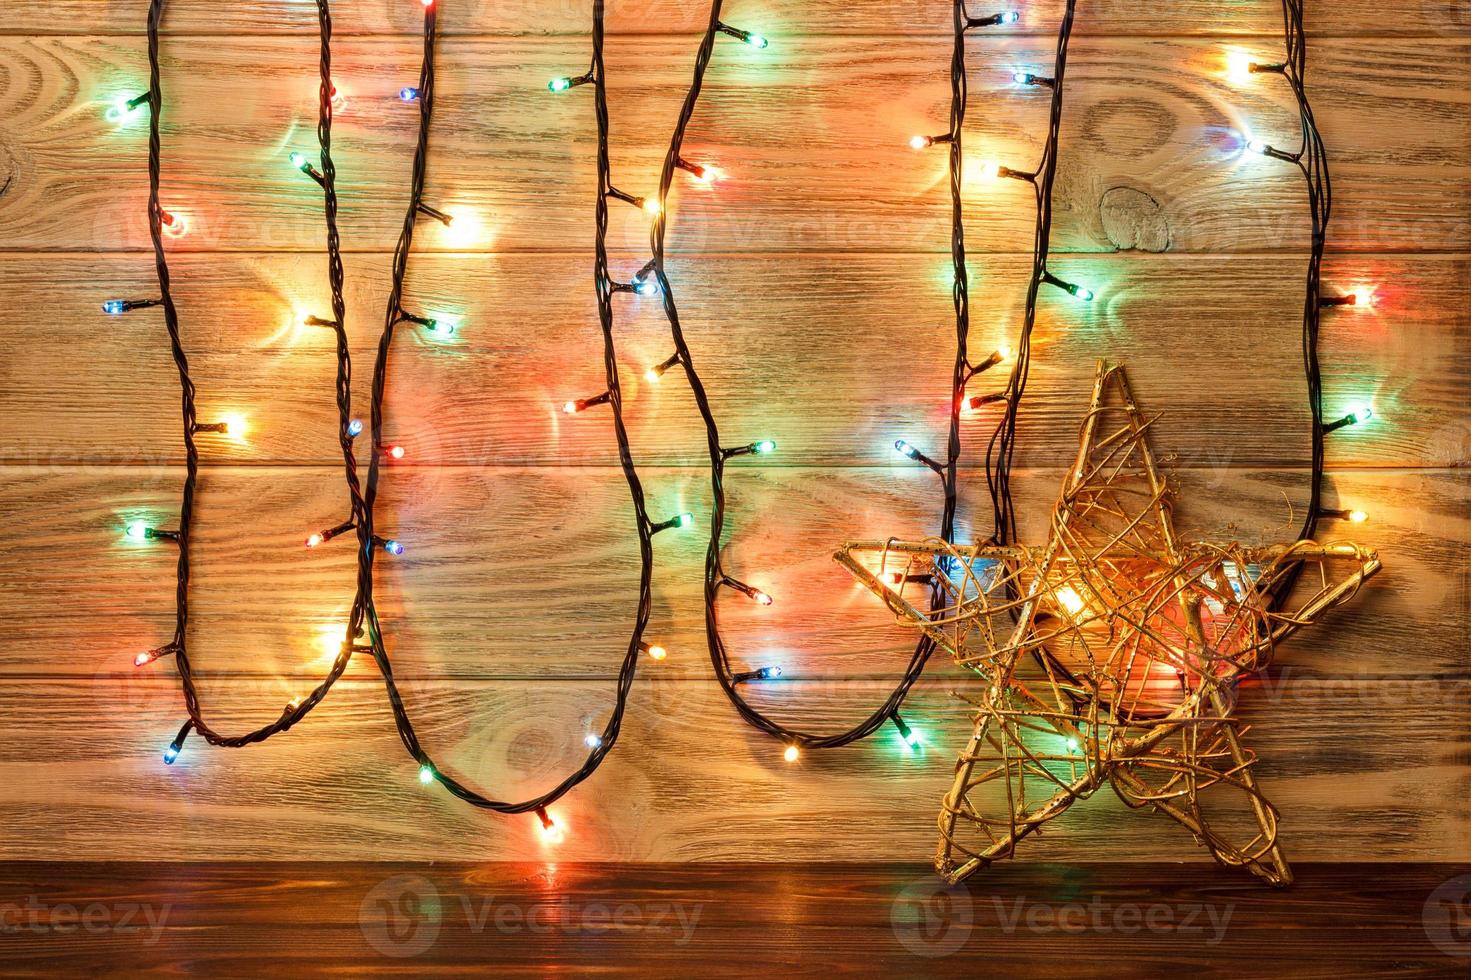 ster voorwerp is Aan de verdieping tegen de backdrop van een houten muur. groot ster foto